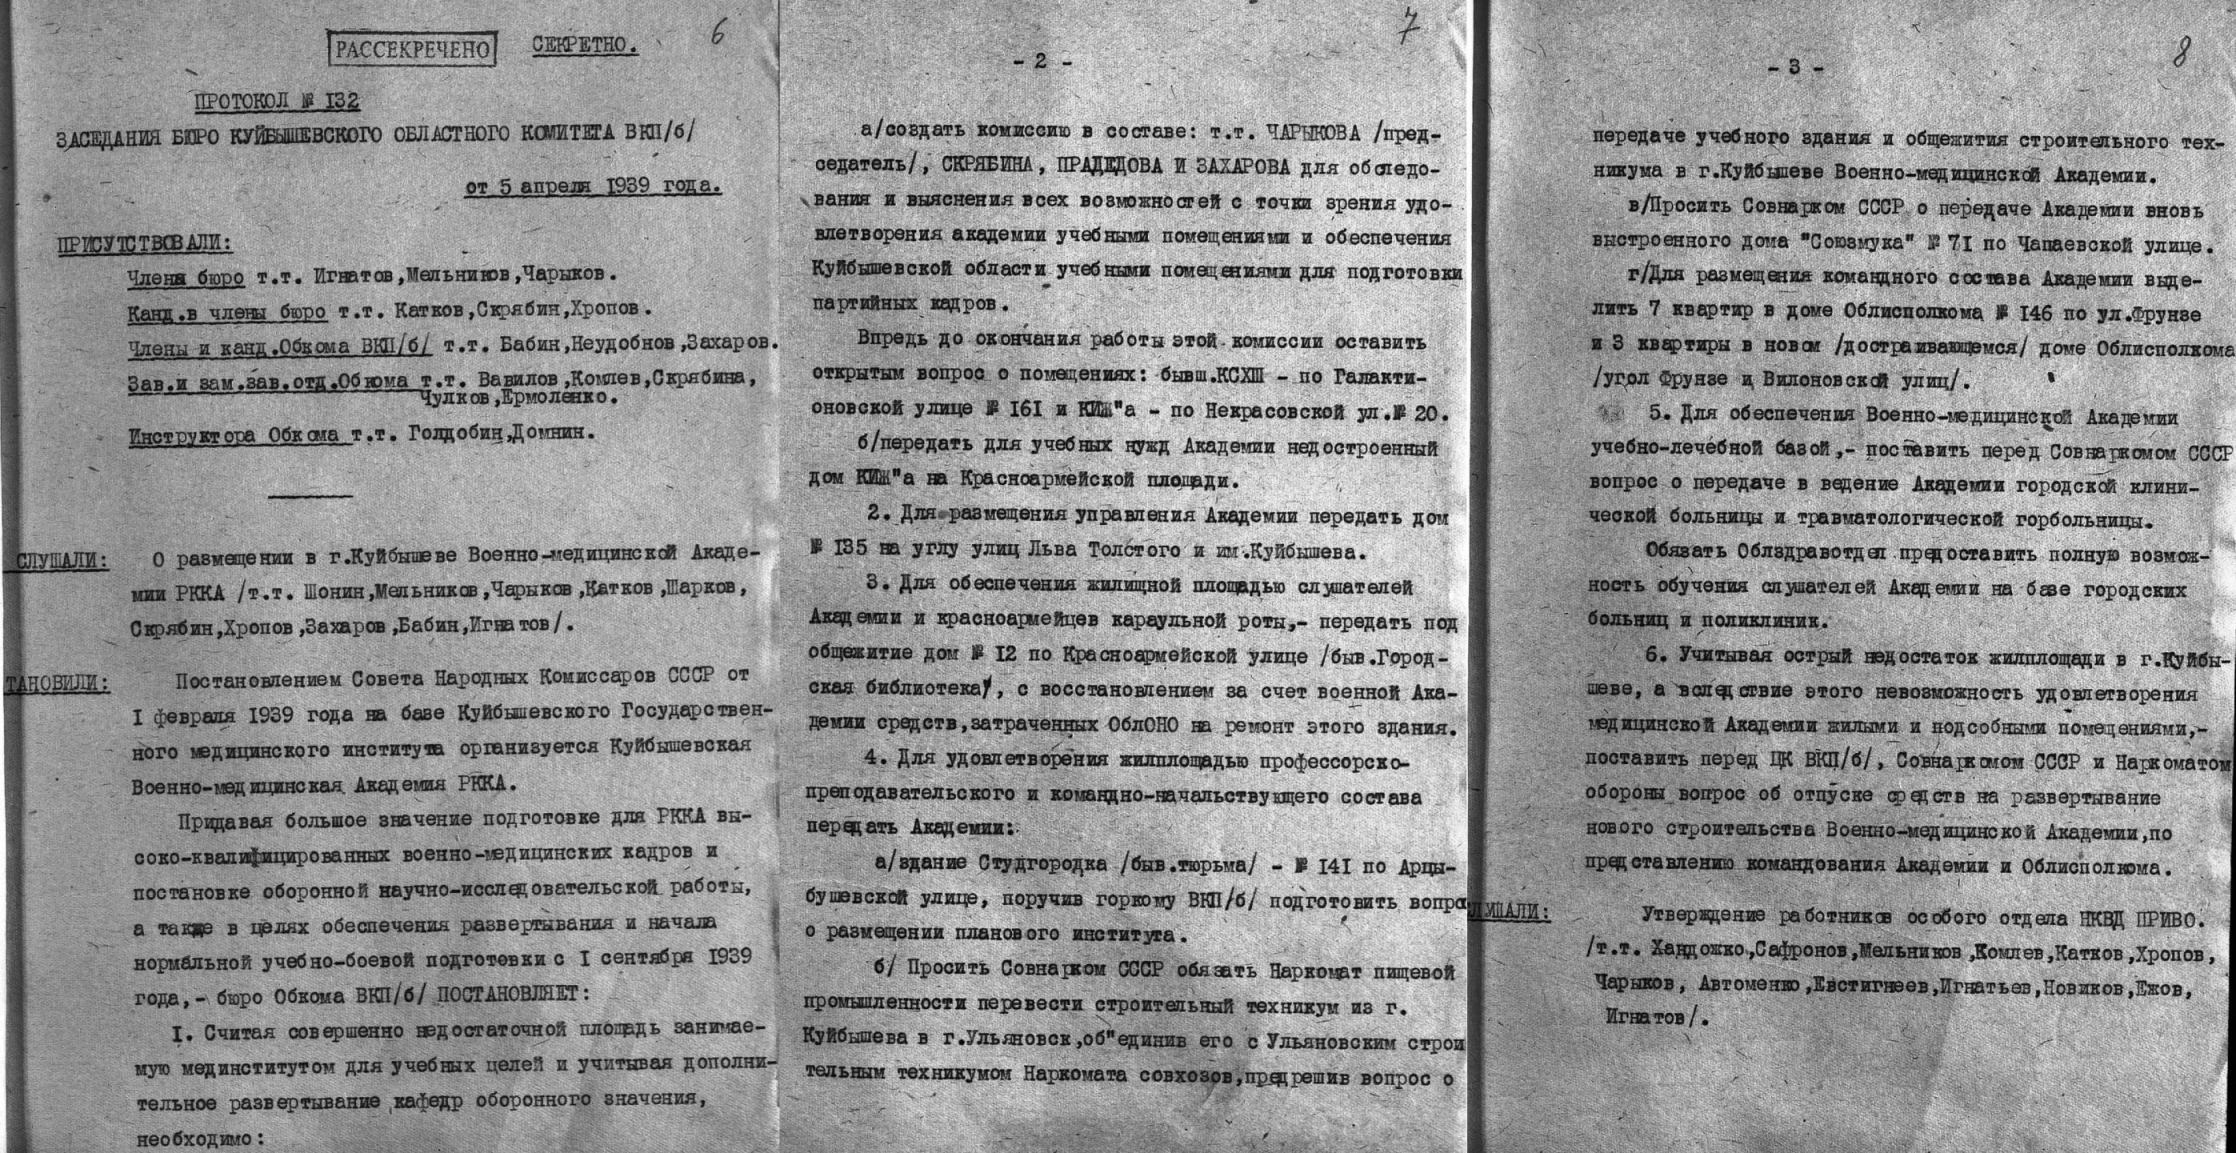 Документы об открытии военно-медицинской академии РККА